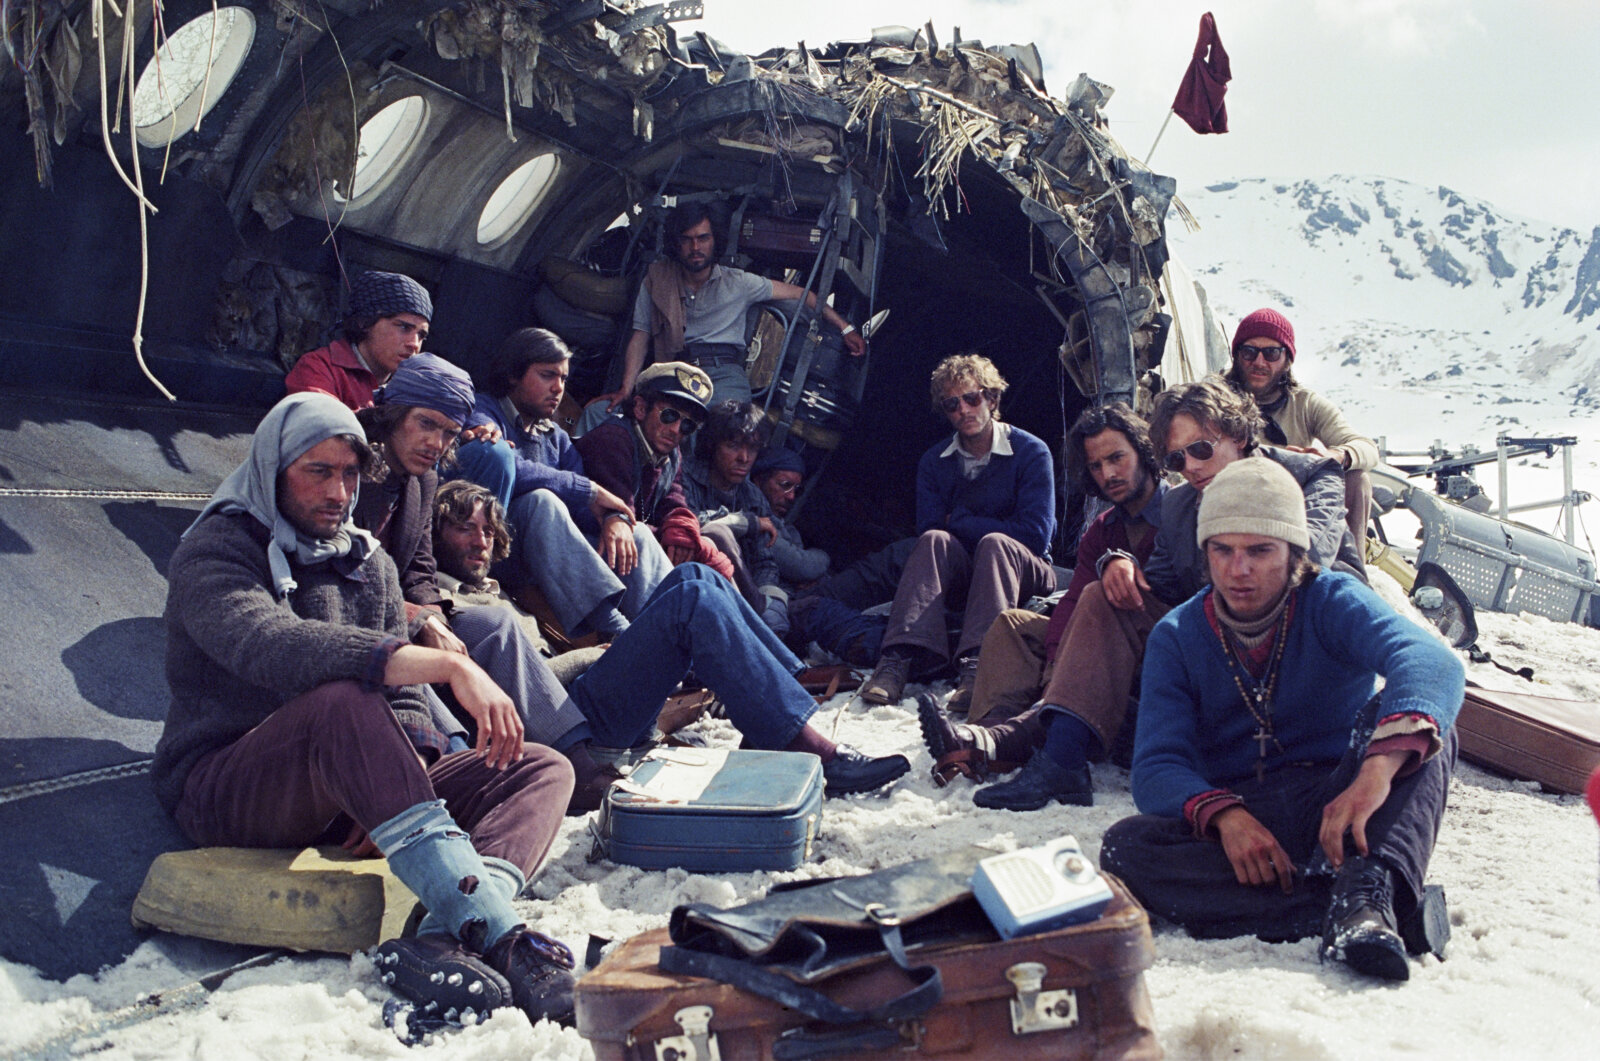 Eine Szene aus Die Schneegesellschaft: Die Überlebenden des Flugzeugabsturzes sitzen vor dem Wrack des Flugzeuges.